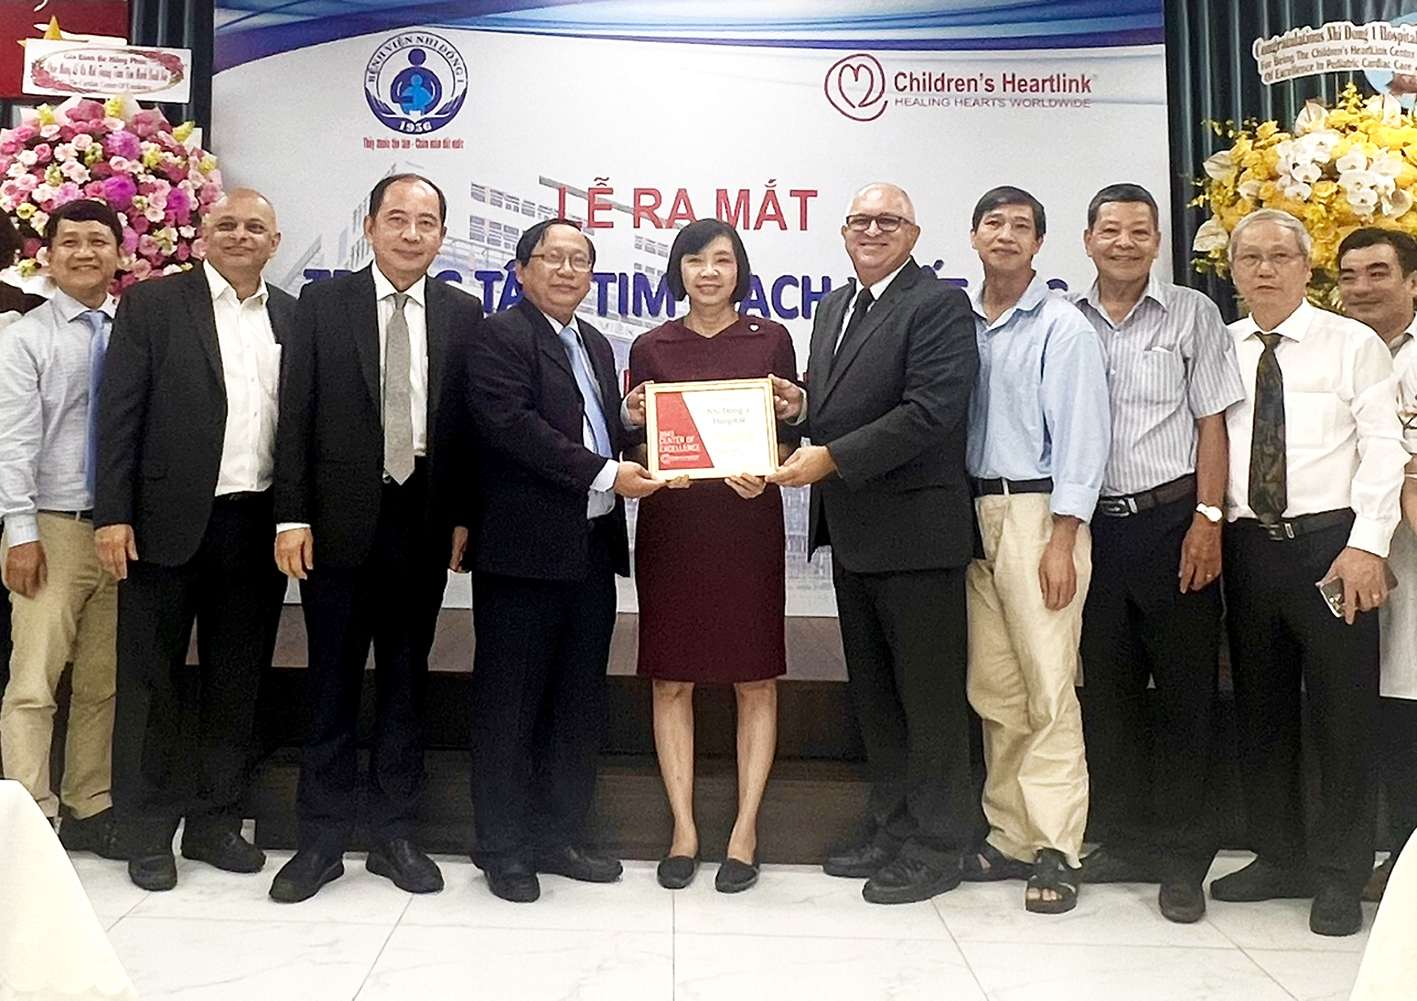 Giám đốc Bệnh viện Nhi Đồng 1 Nguyễn Thanh Hùng (thứ tư từ trái sang) nhận chứng nhận Trung tâm Tim mạch xuất sắc từ Tổ chức Children’s HeartLink - ẢNH: V.T.